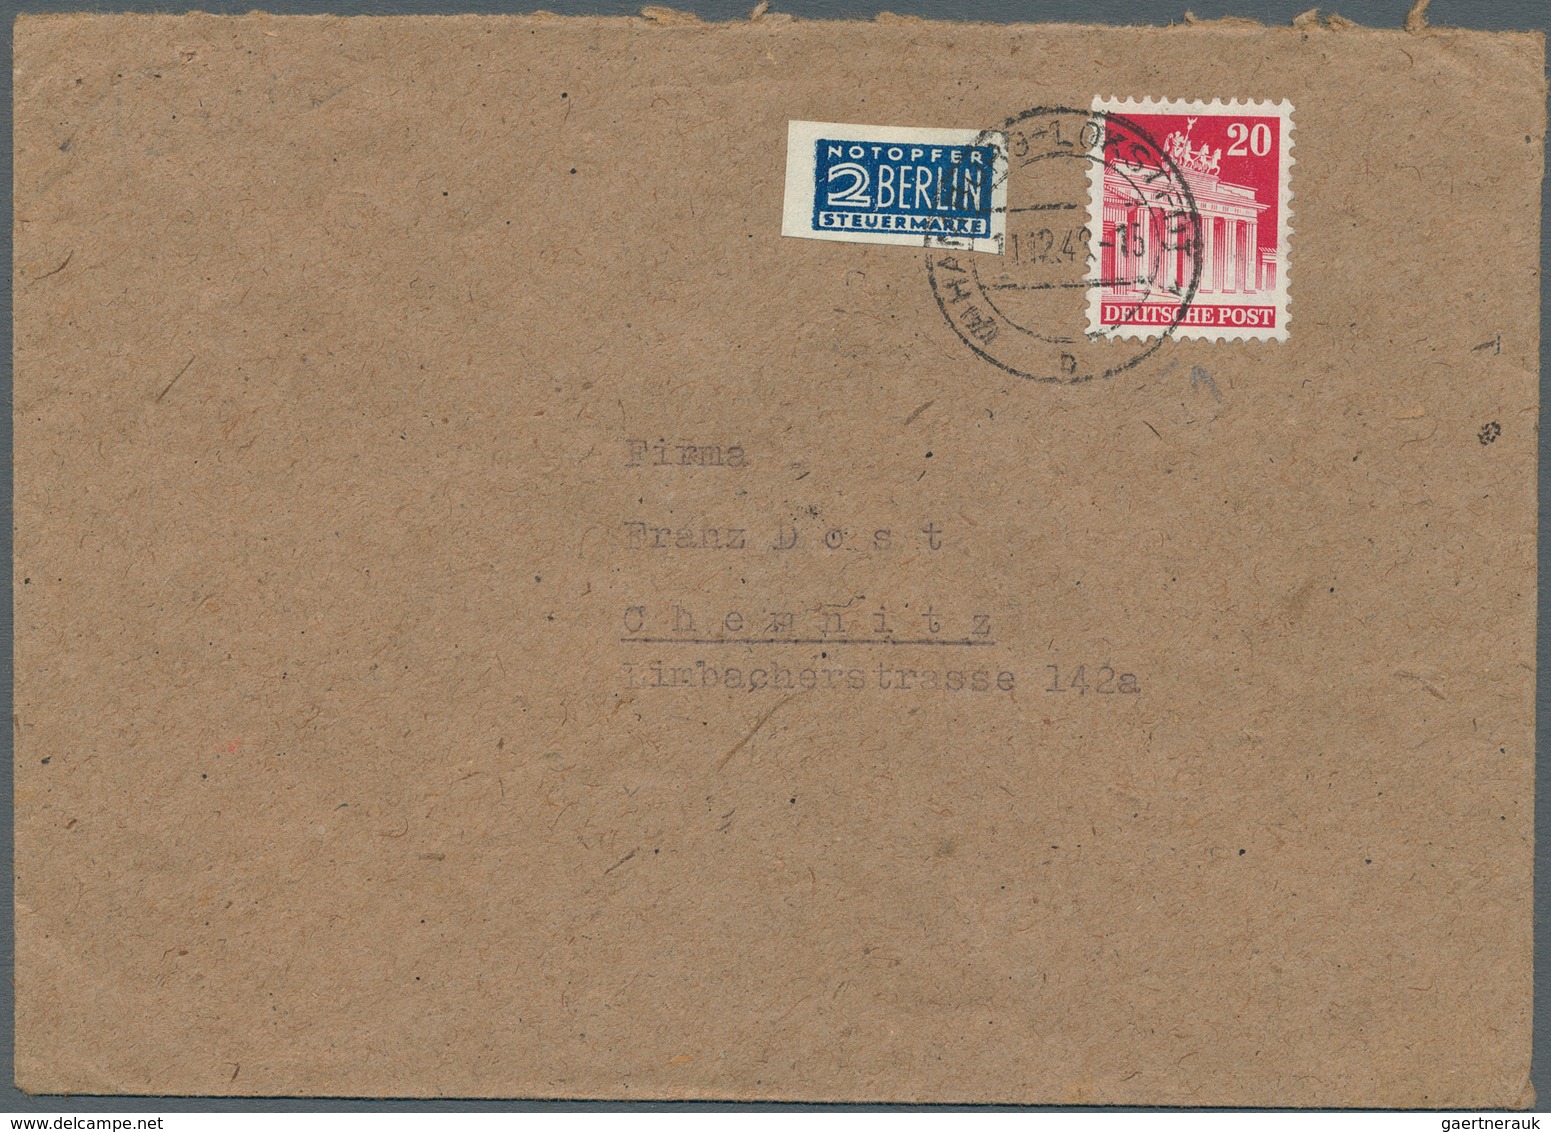 32625 Bizone: 1948/1959, Bizone und etwas Bund meist bis 1950/1951, Posten von ca. 230 Briefen und Karten,